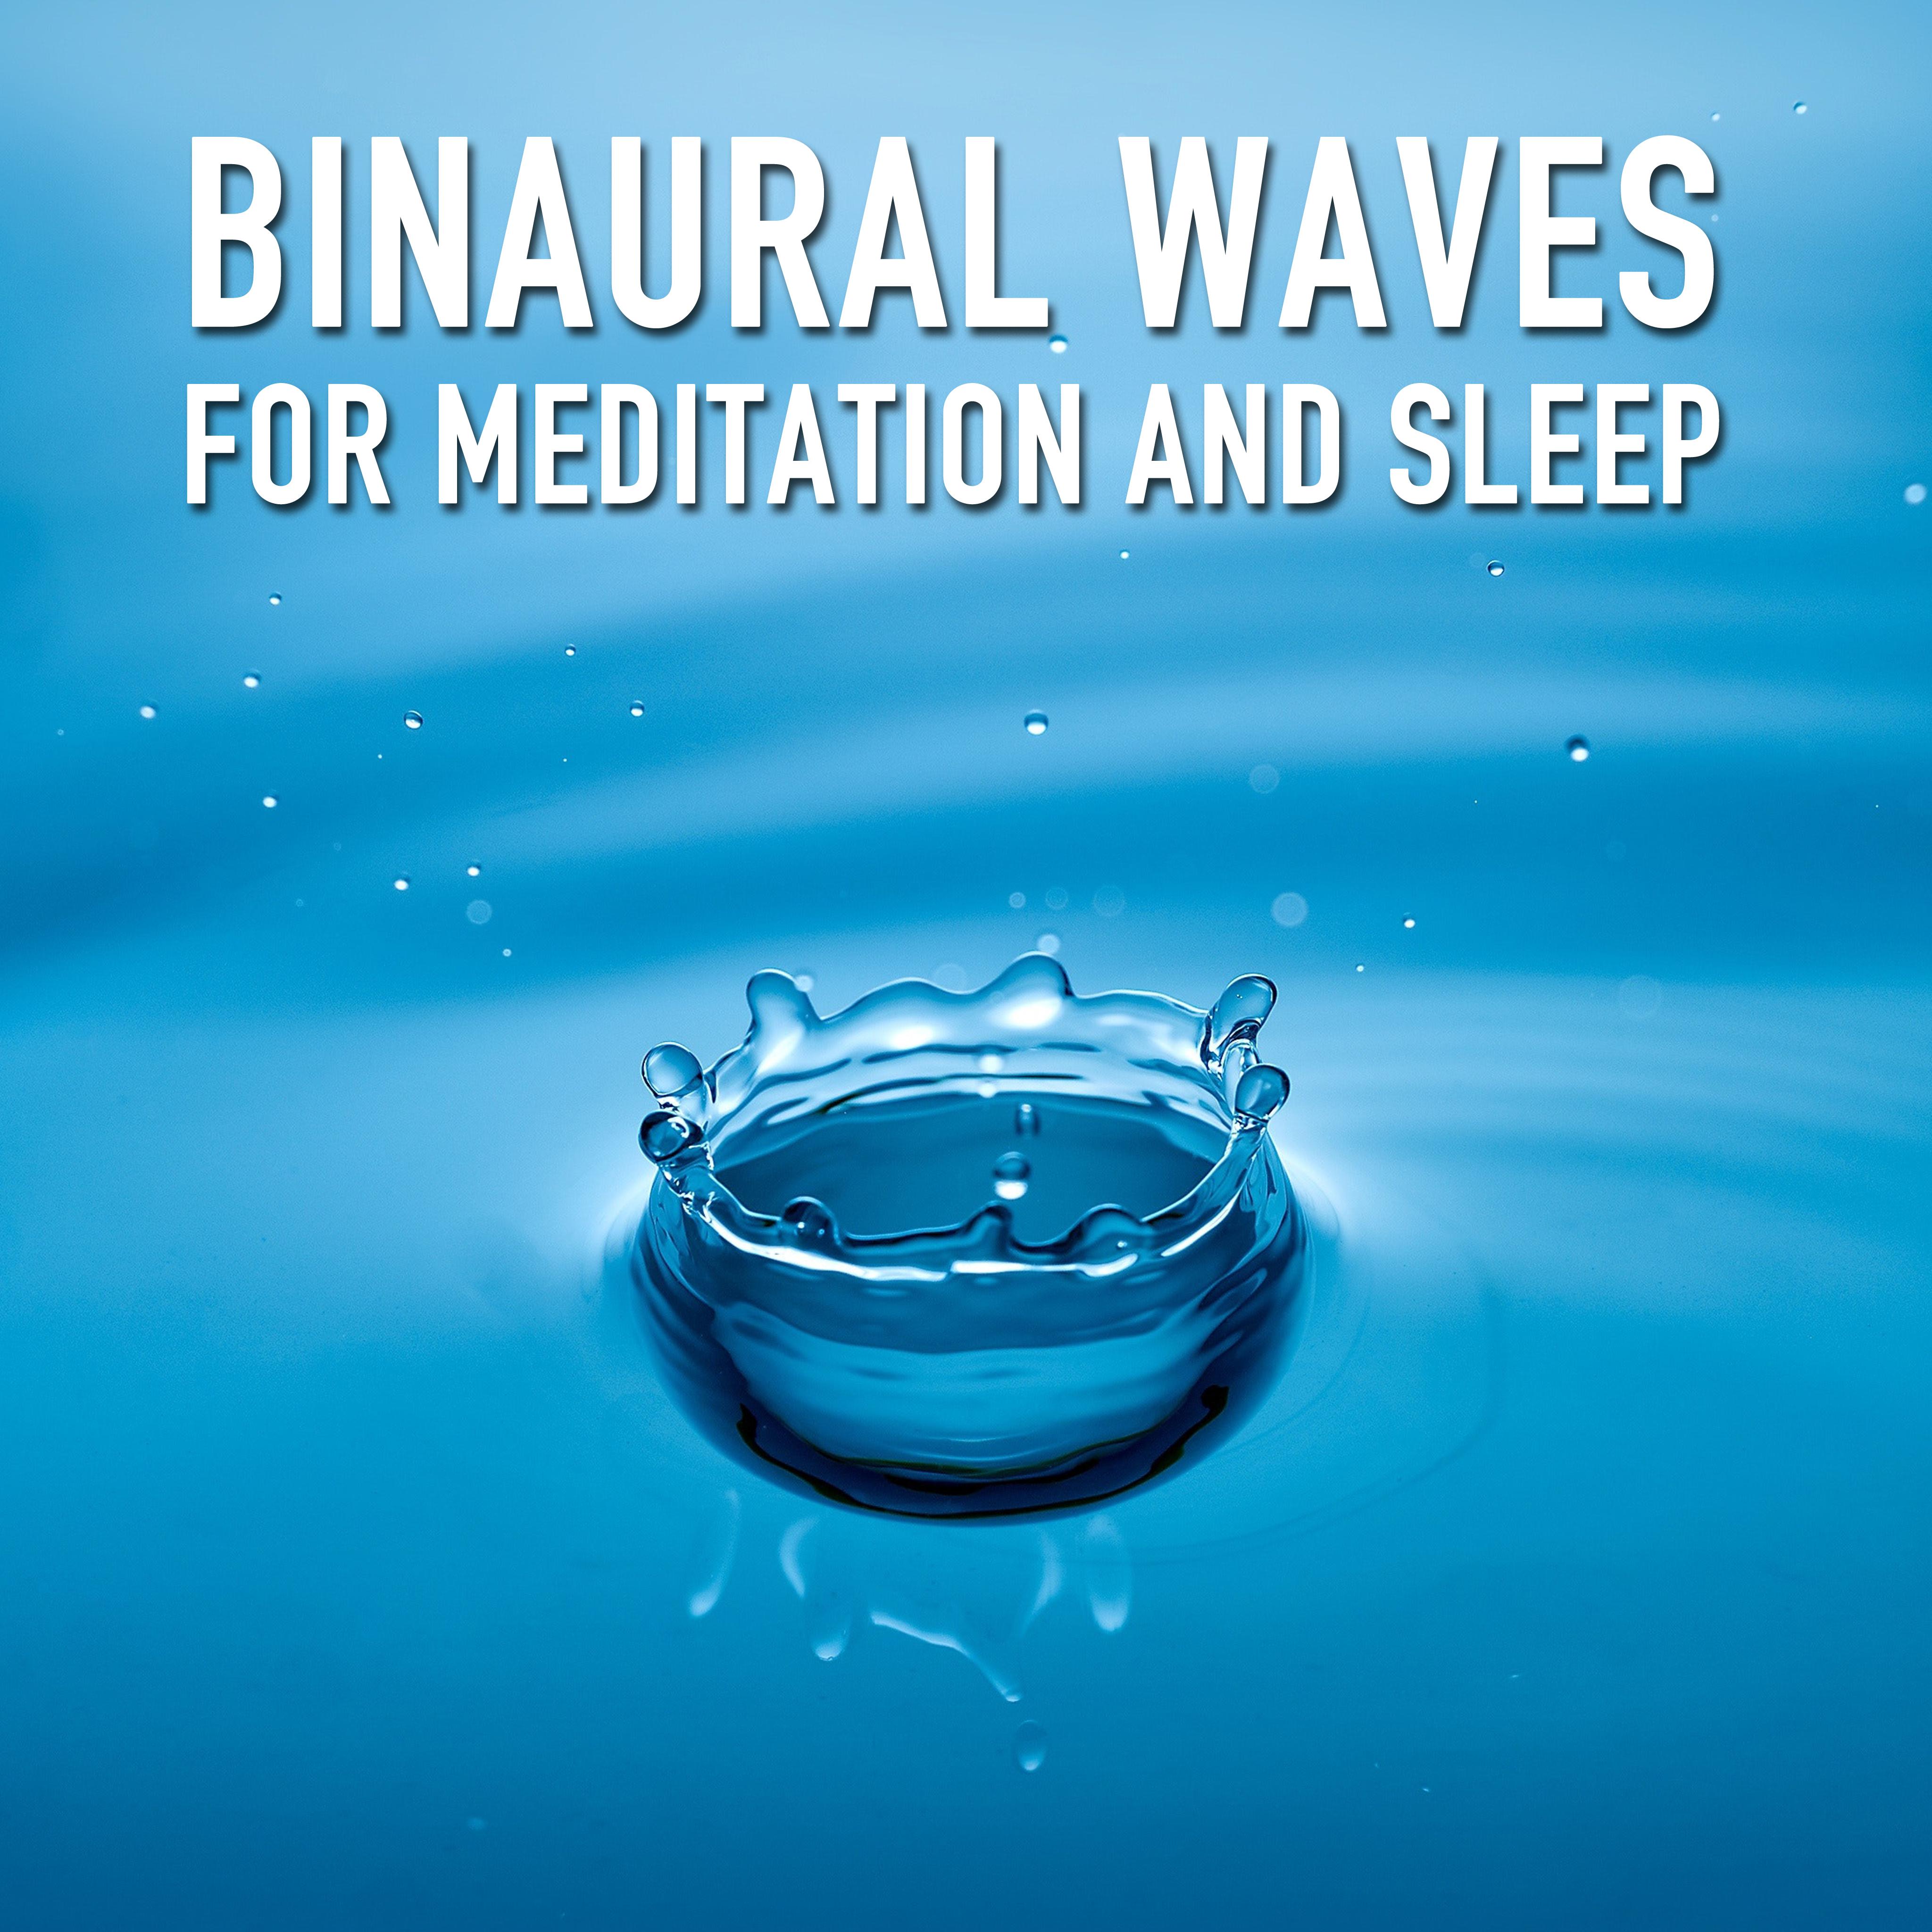 11 Binaural Waves for Meditation and Sleep